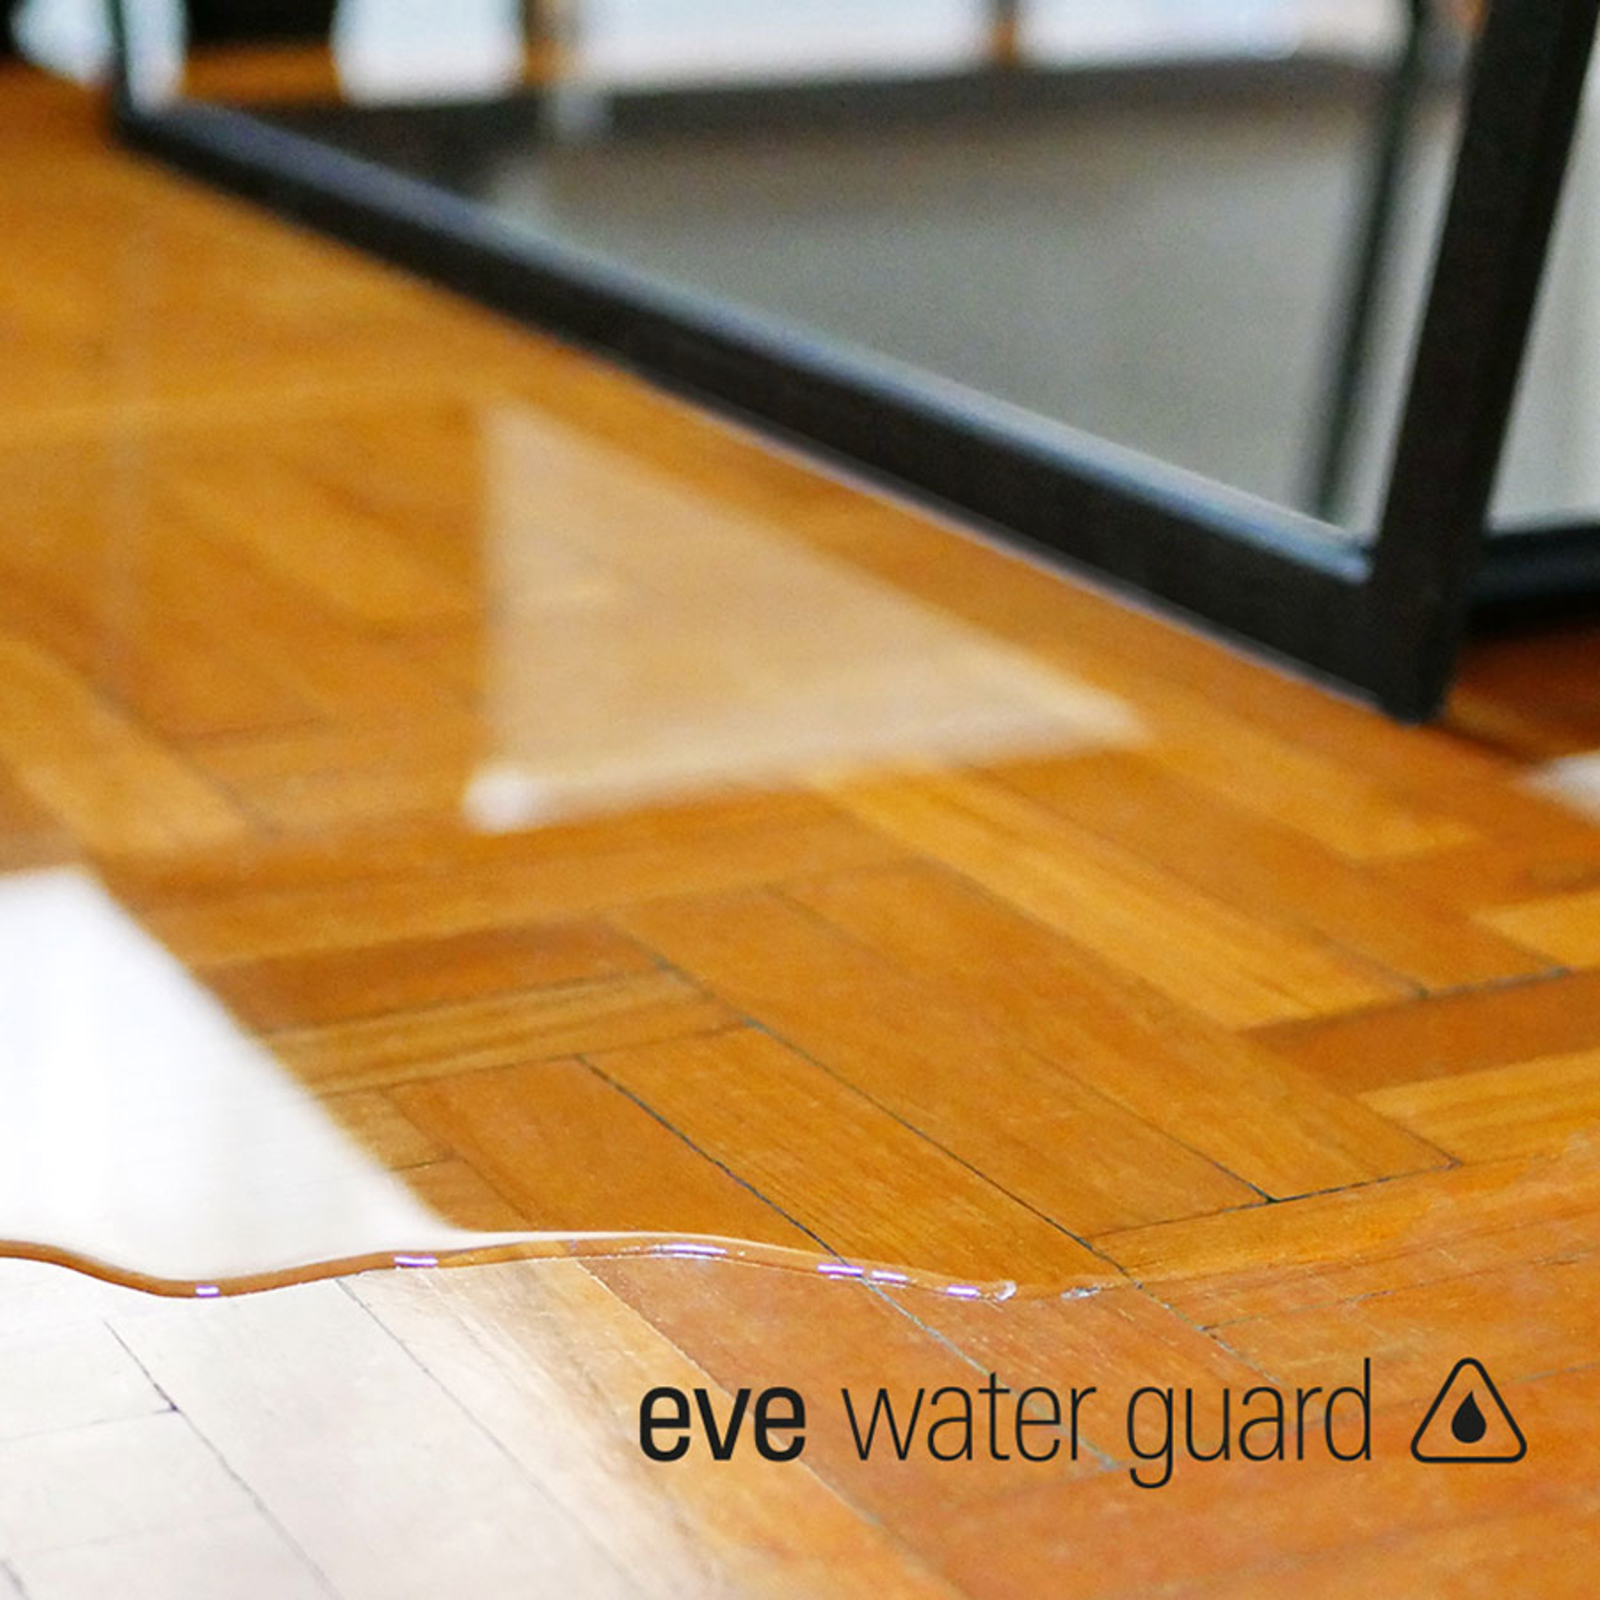 Eve Water Guard, smarter Wassermelder mit Thread